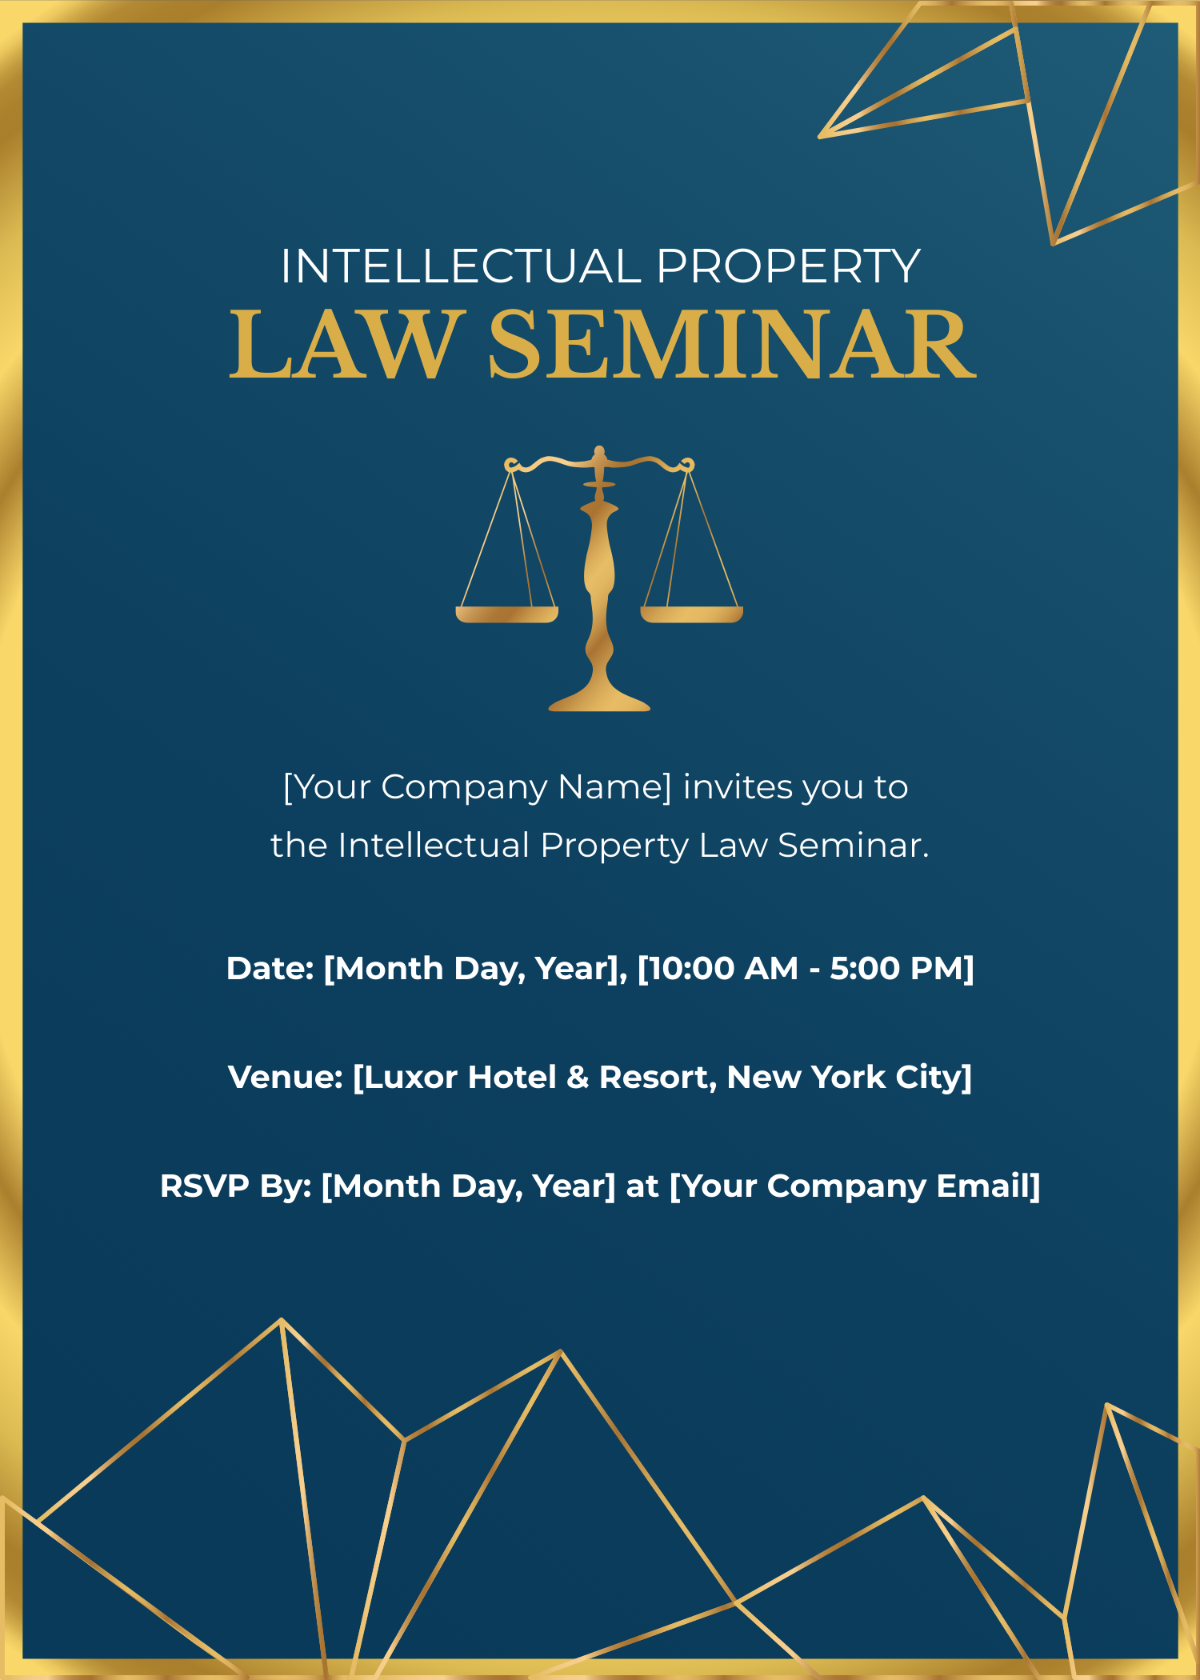 Intellectual Property Law Seminar Invitation Card Template